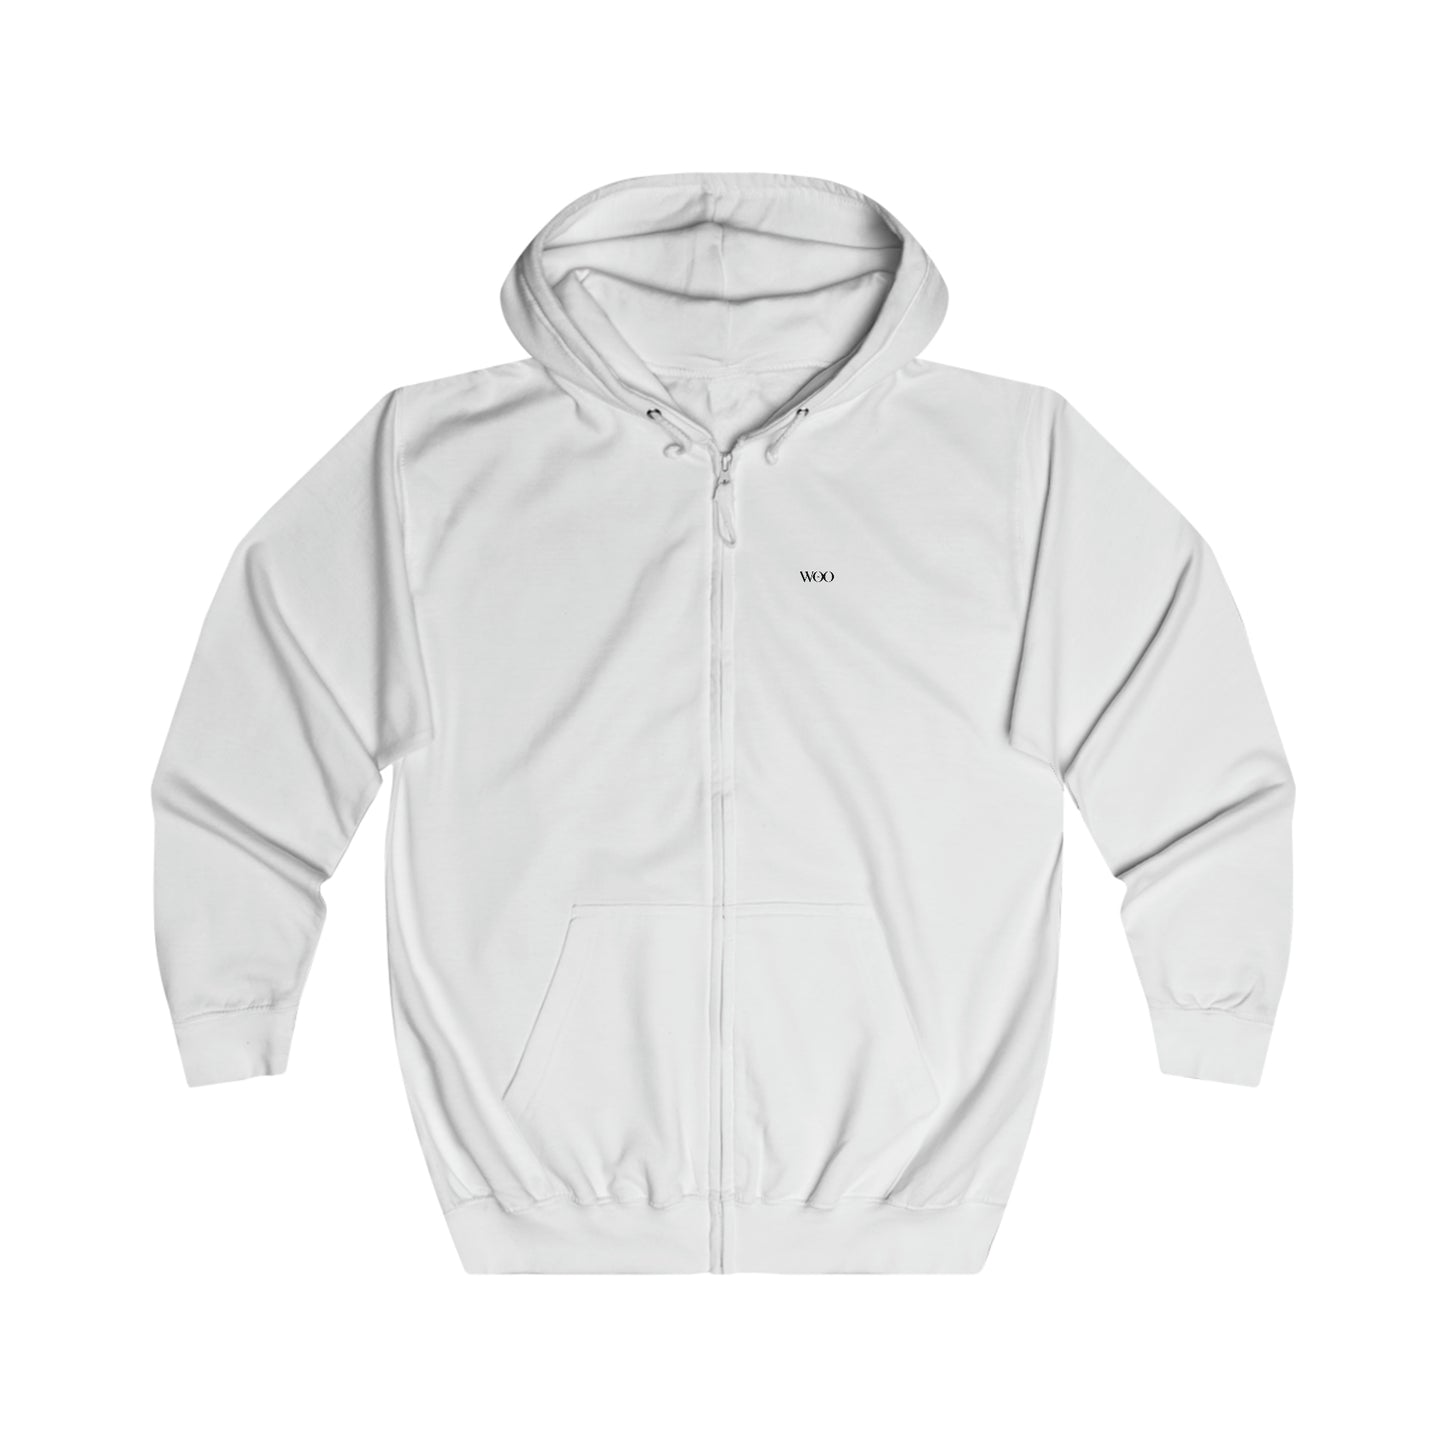 Io - full zip hoodie